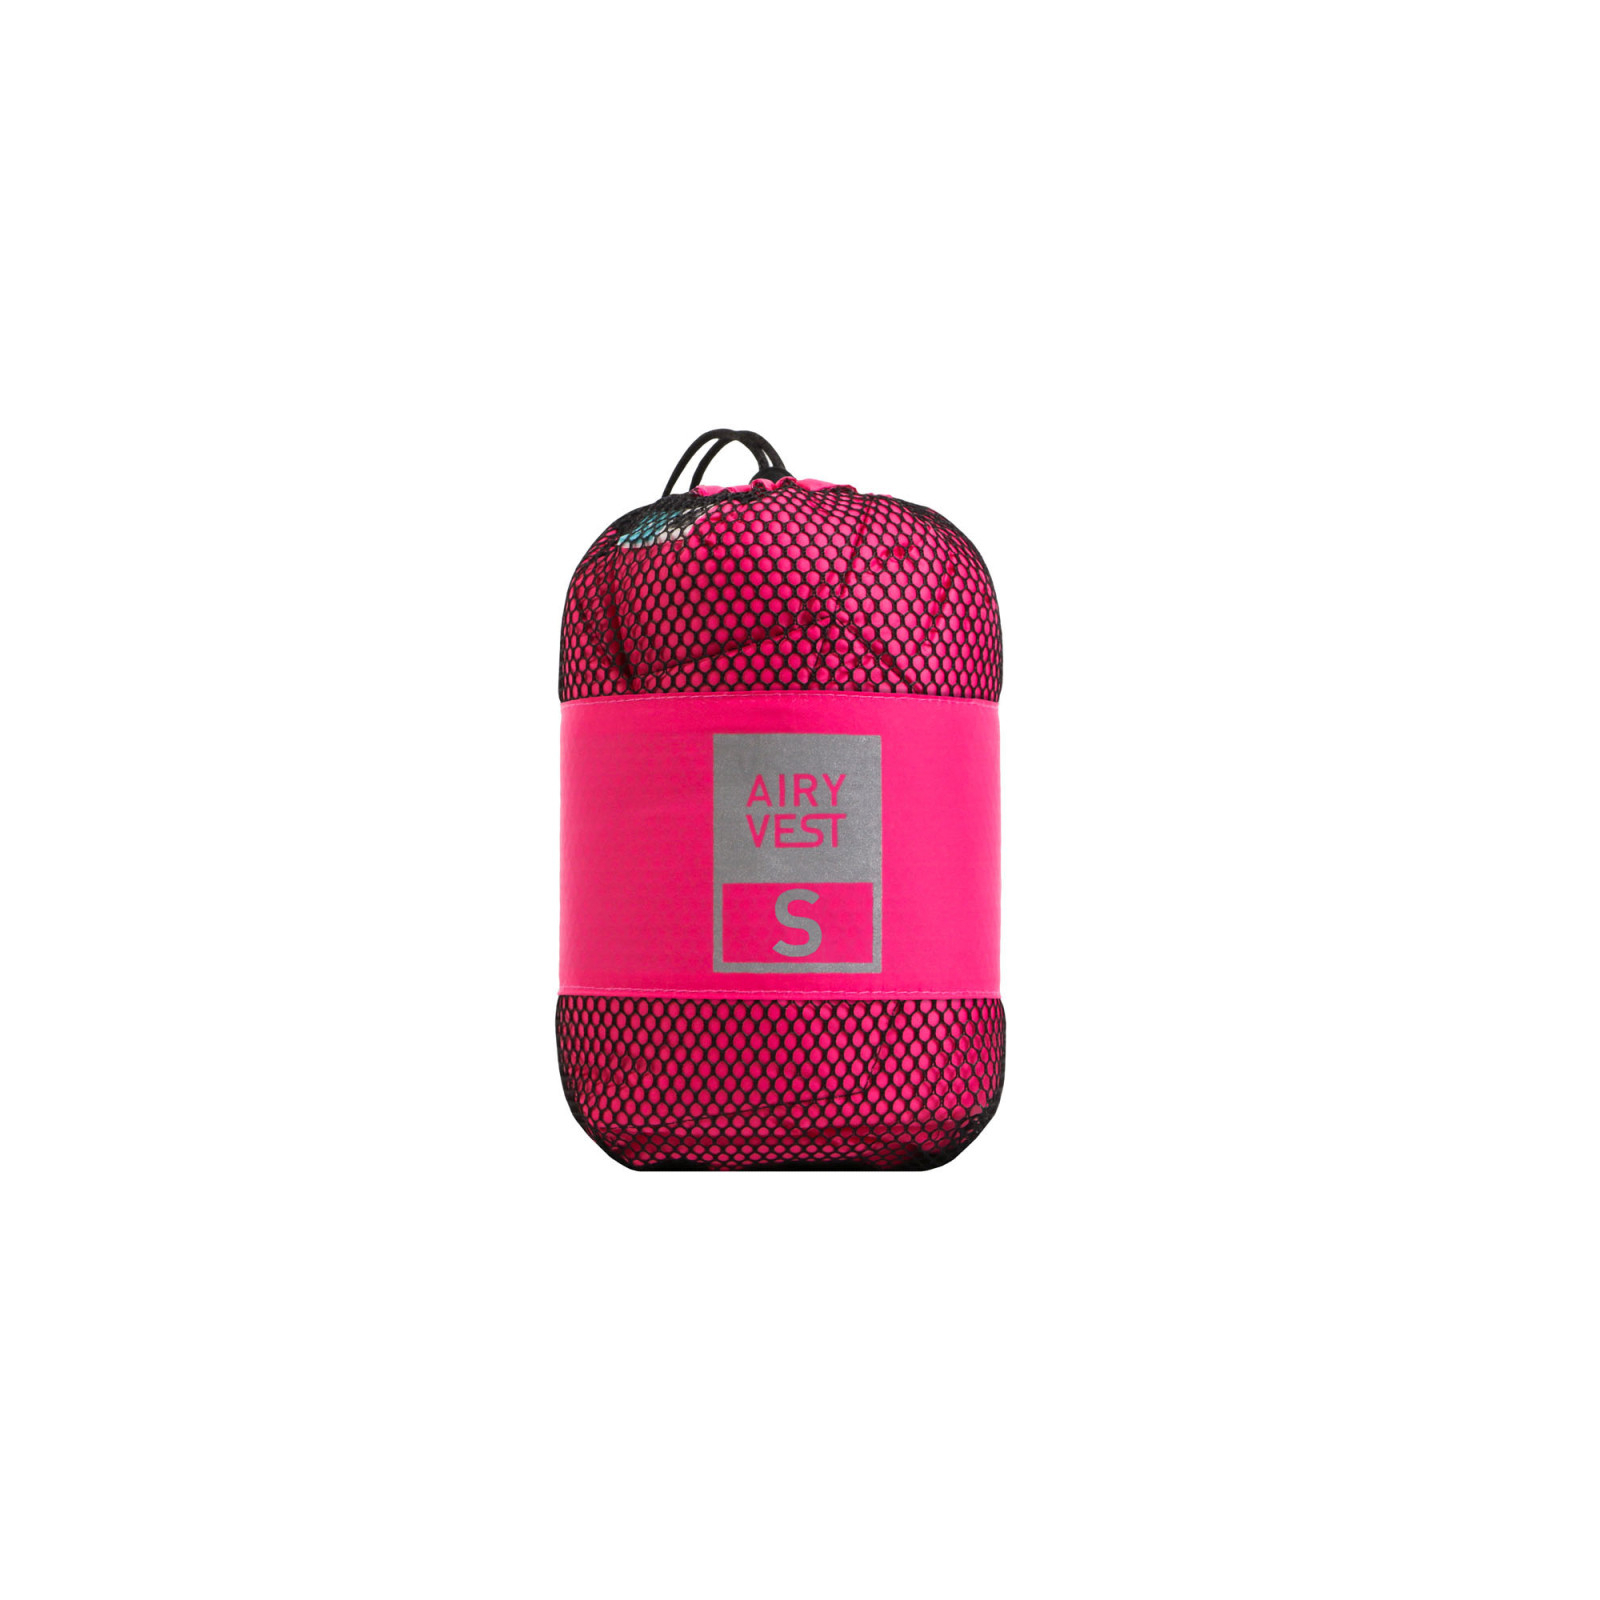 Коврик для животных Airy Vest S 55х40 см розово-черный (0076) изображение 3